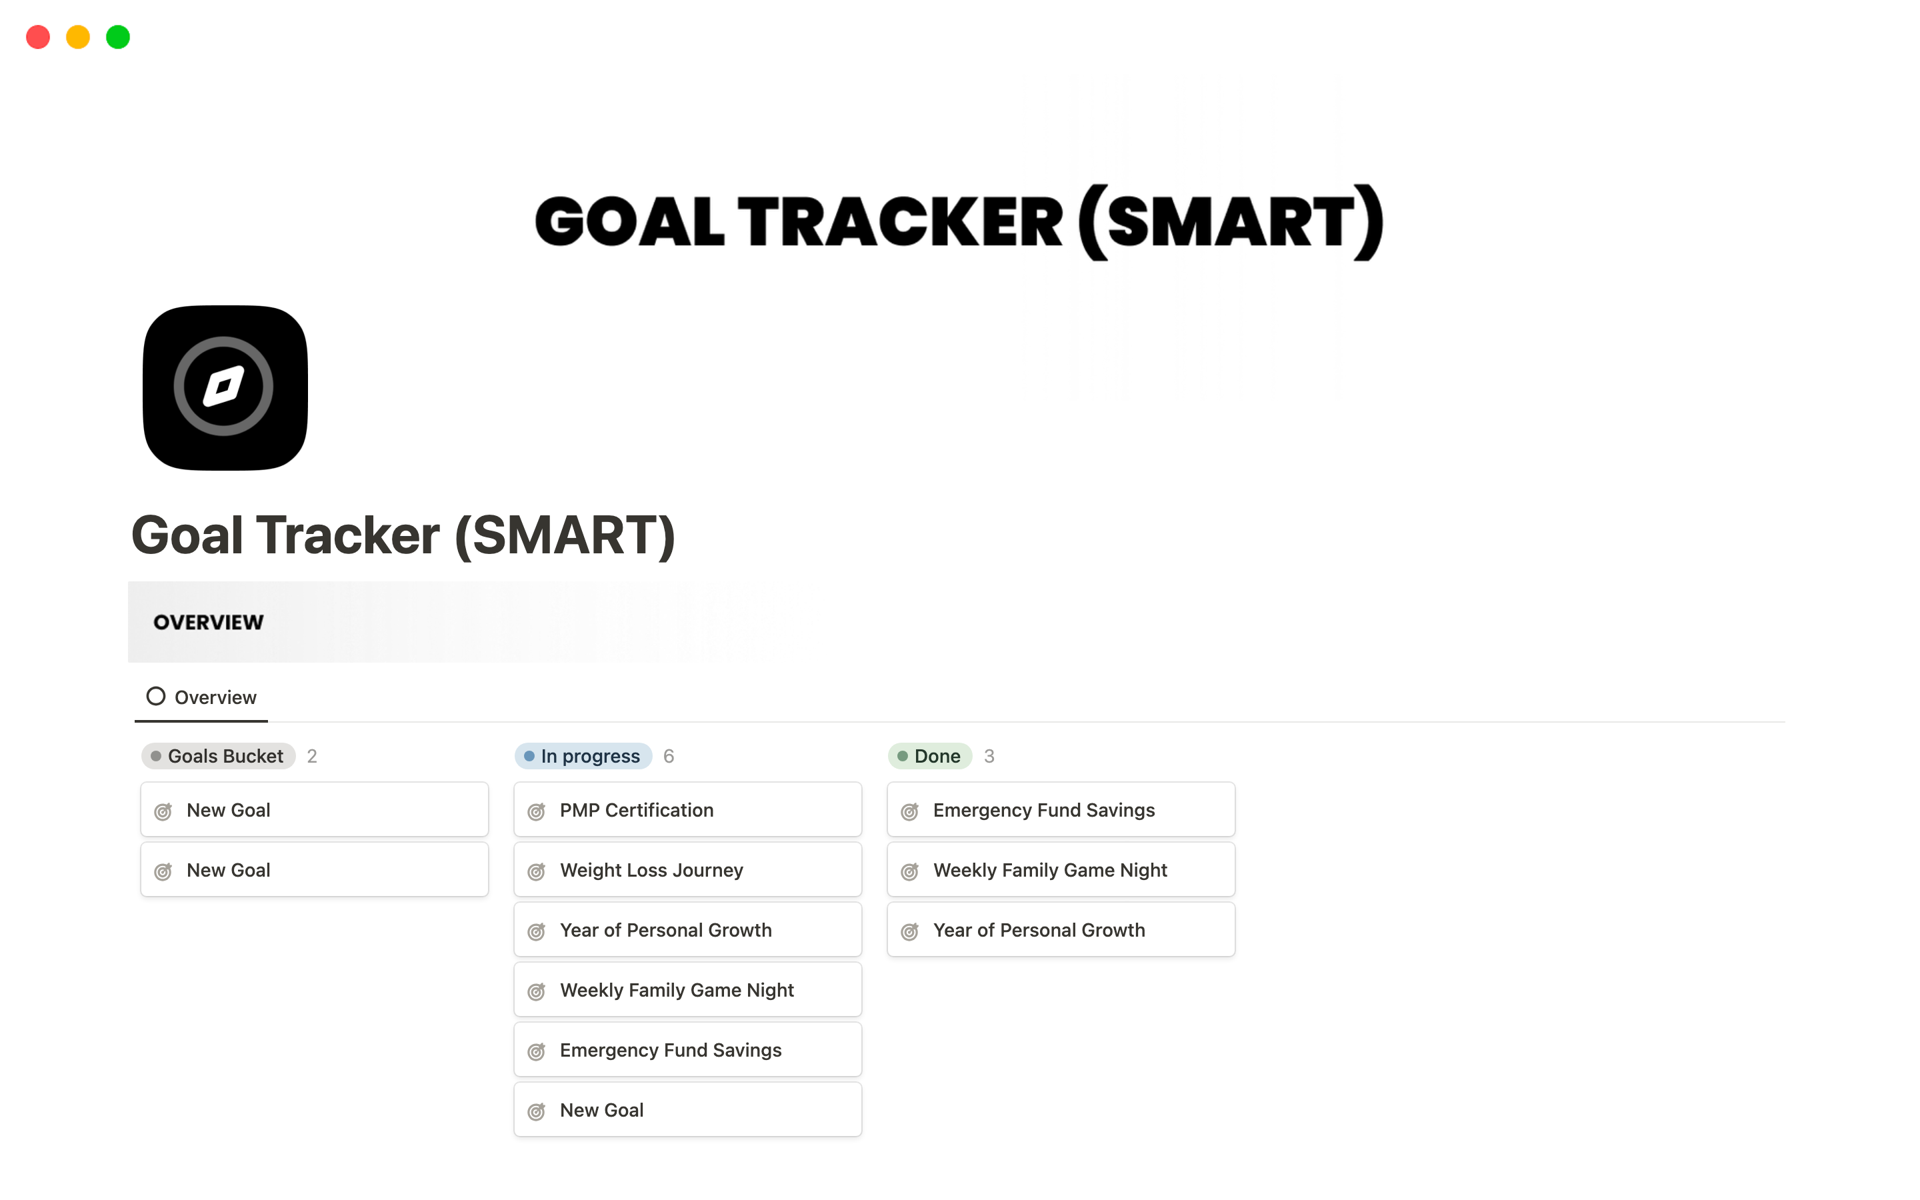 Vista previa de una plantilla para SMART Goal Tracker